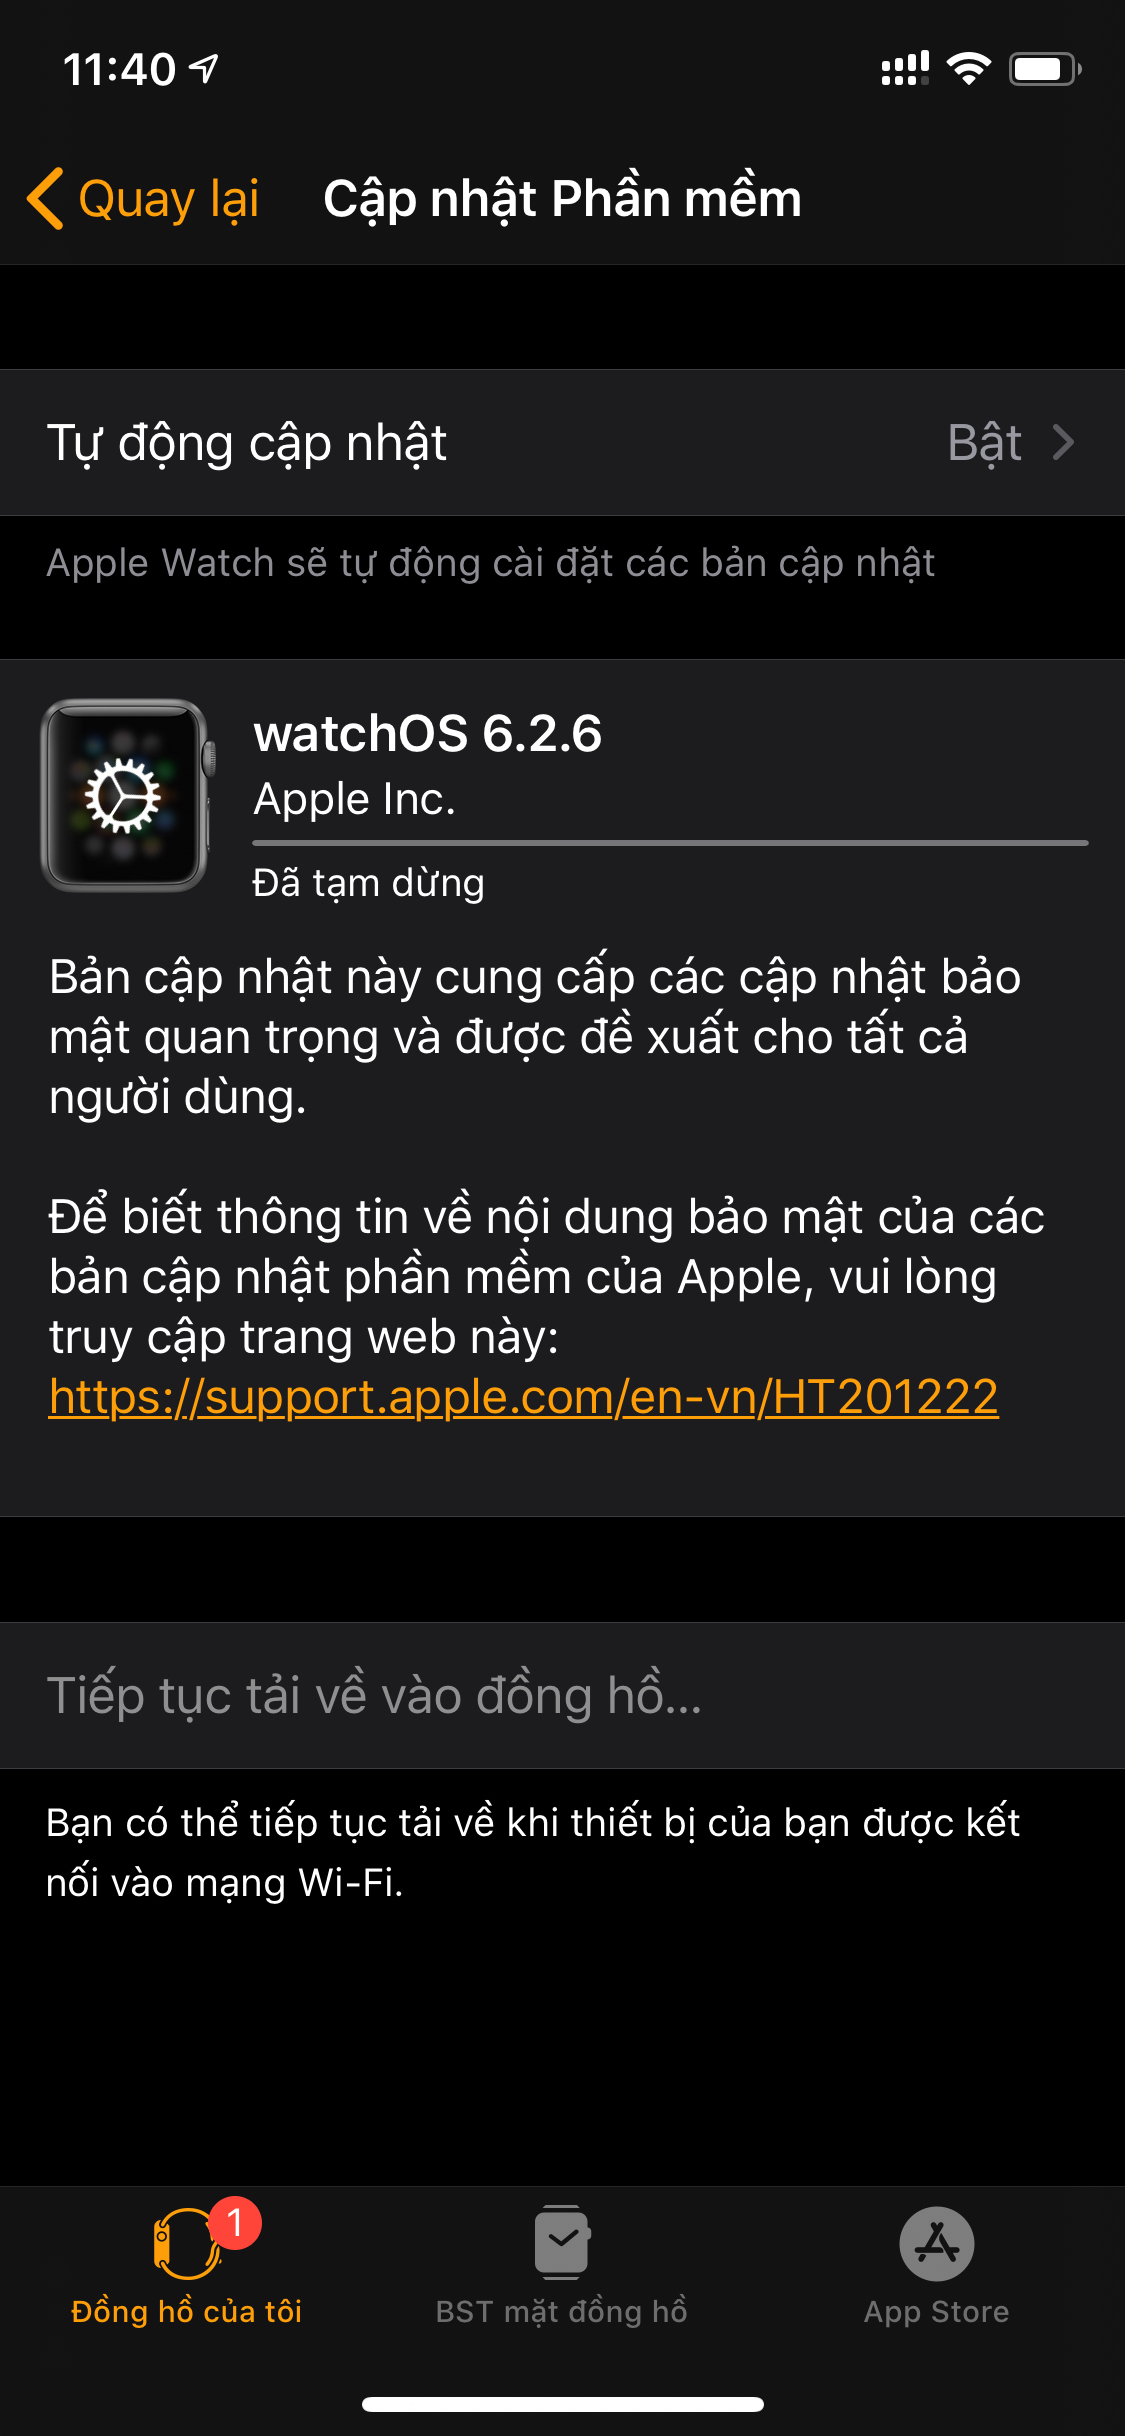 CÓ WATCH OS 6.2.6